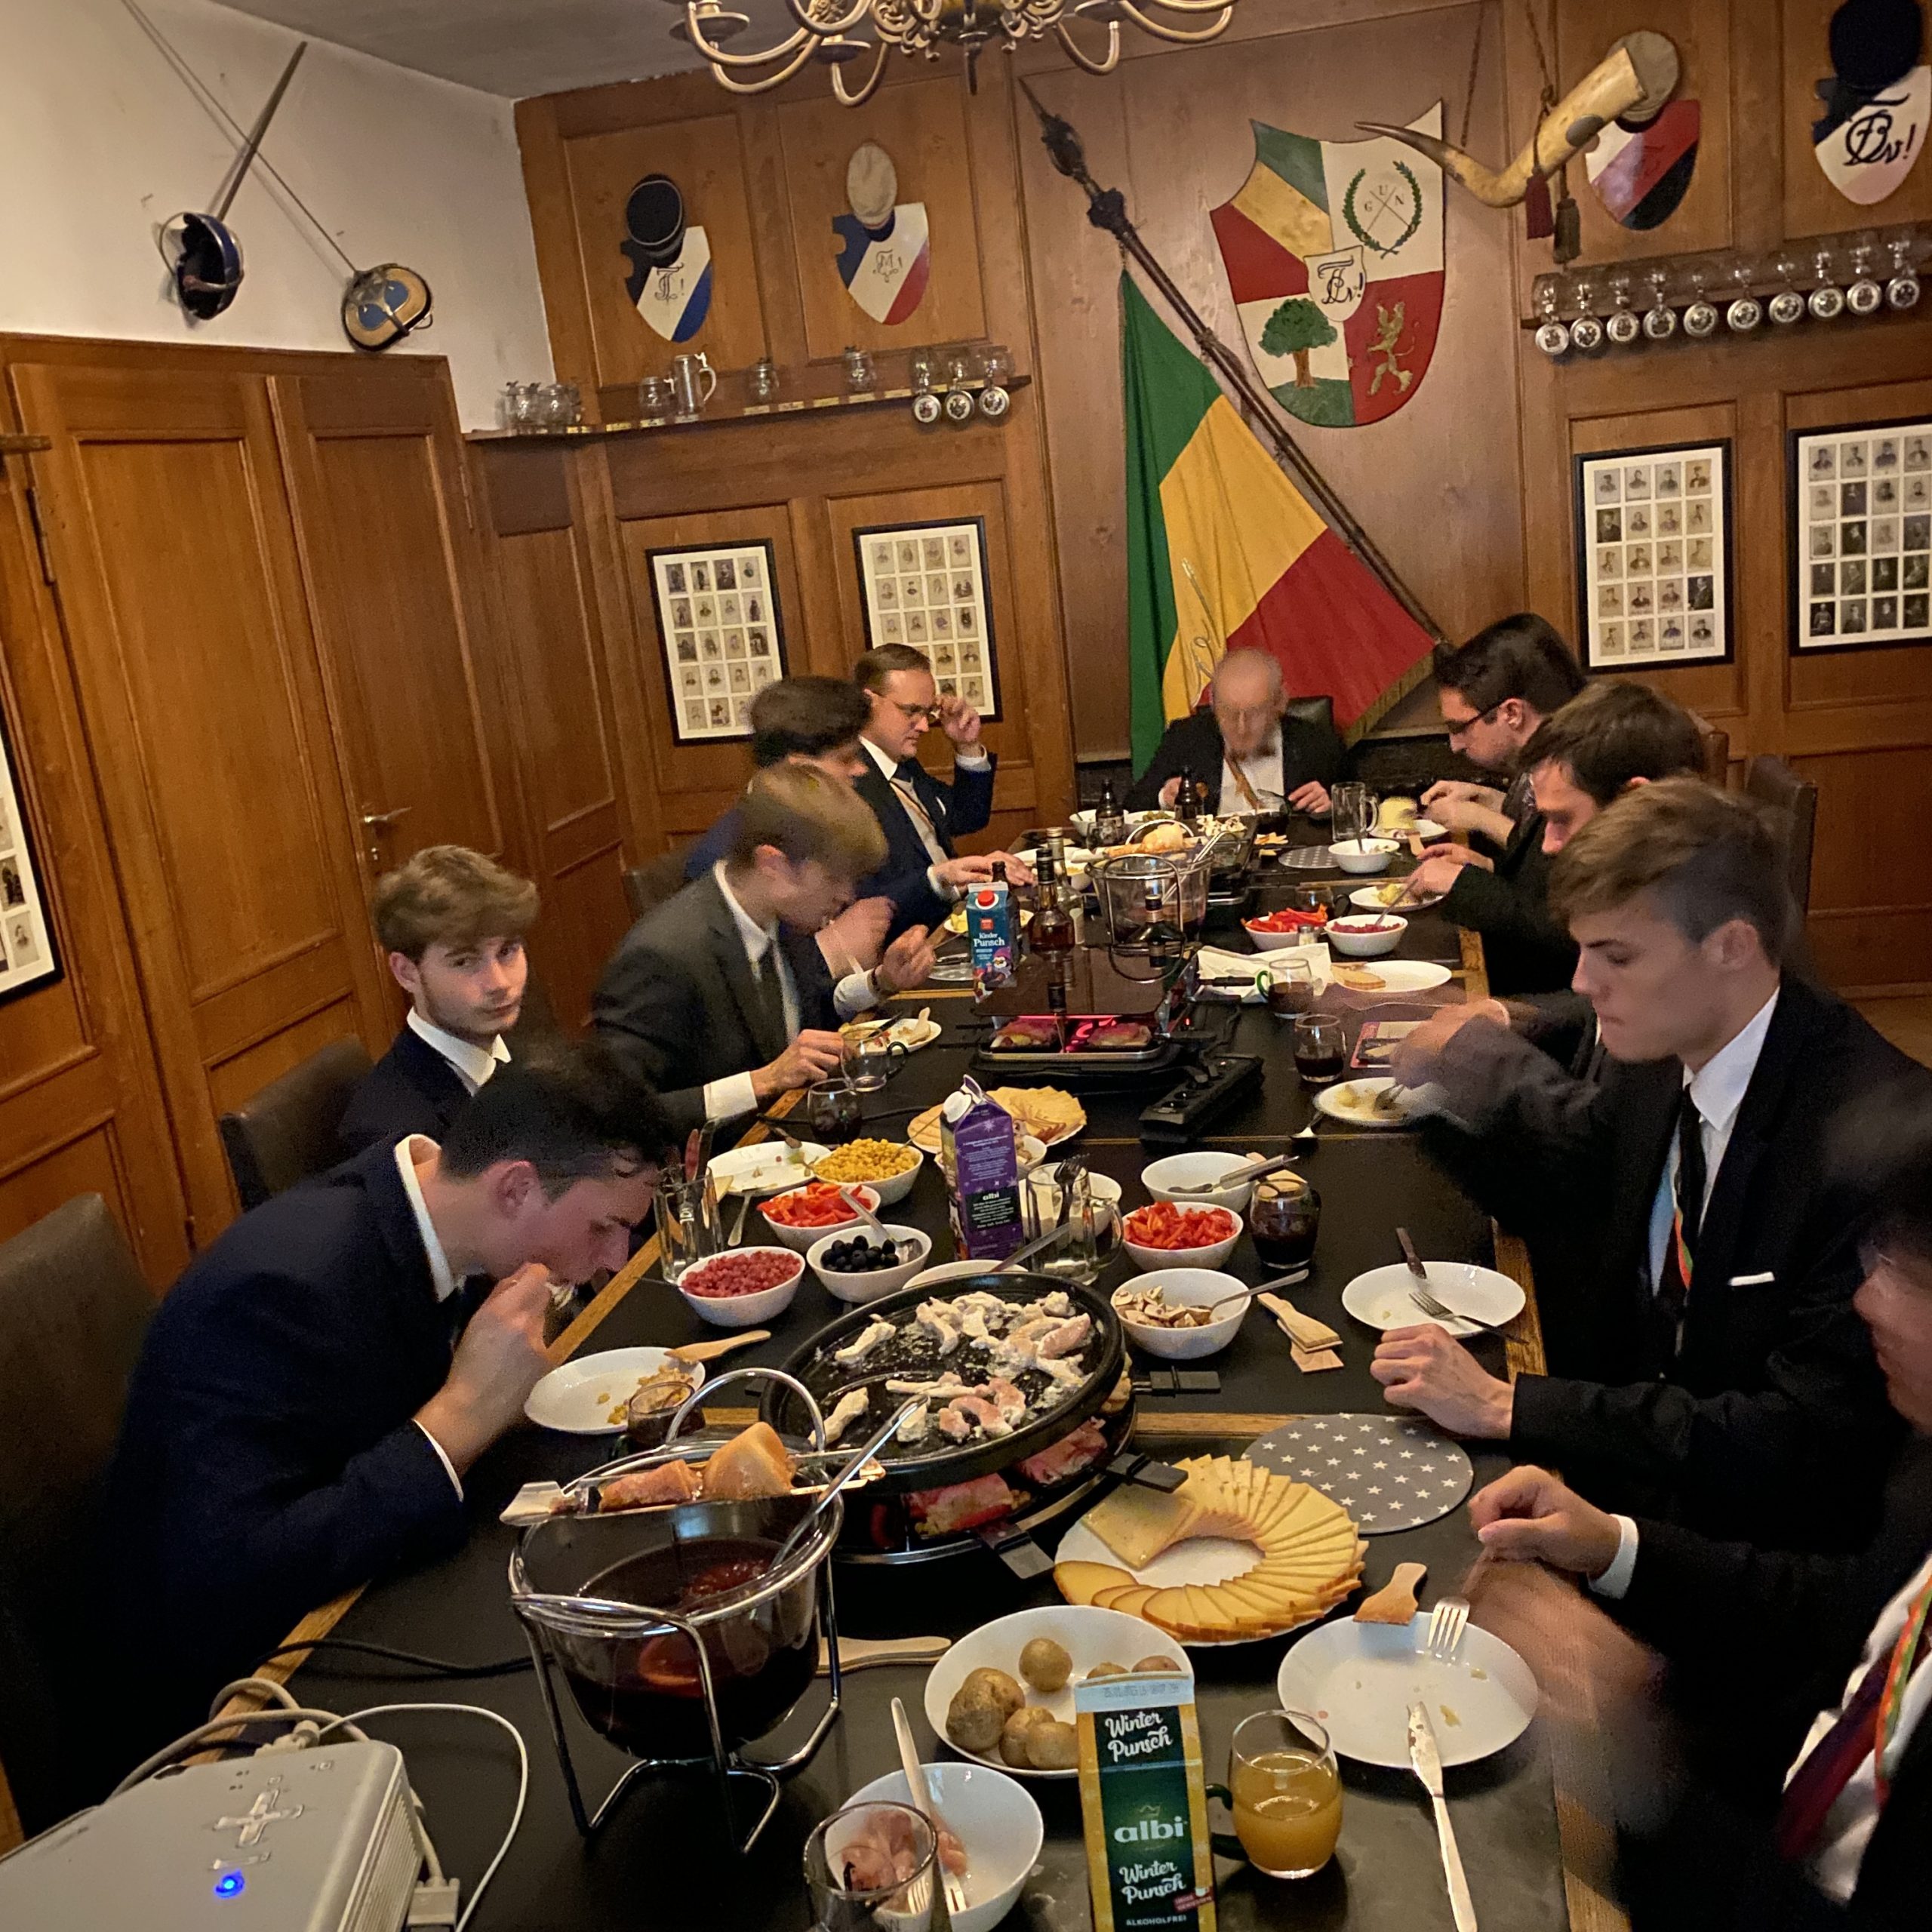 Herren essen am Tisch im Corpshaus in Abendgarderobe